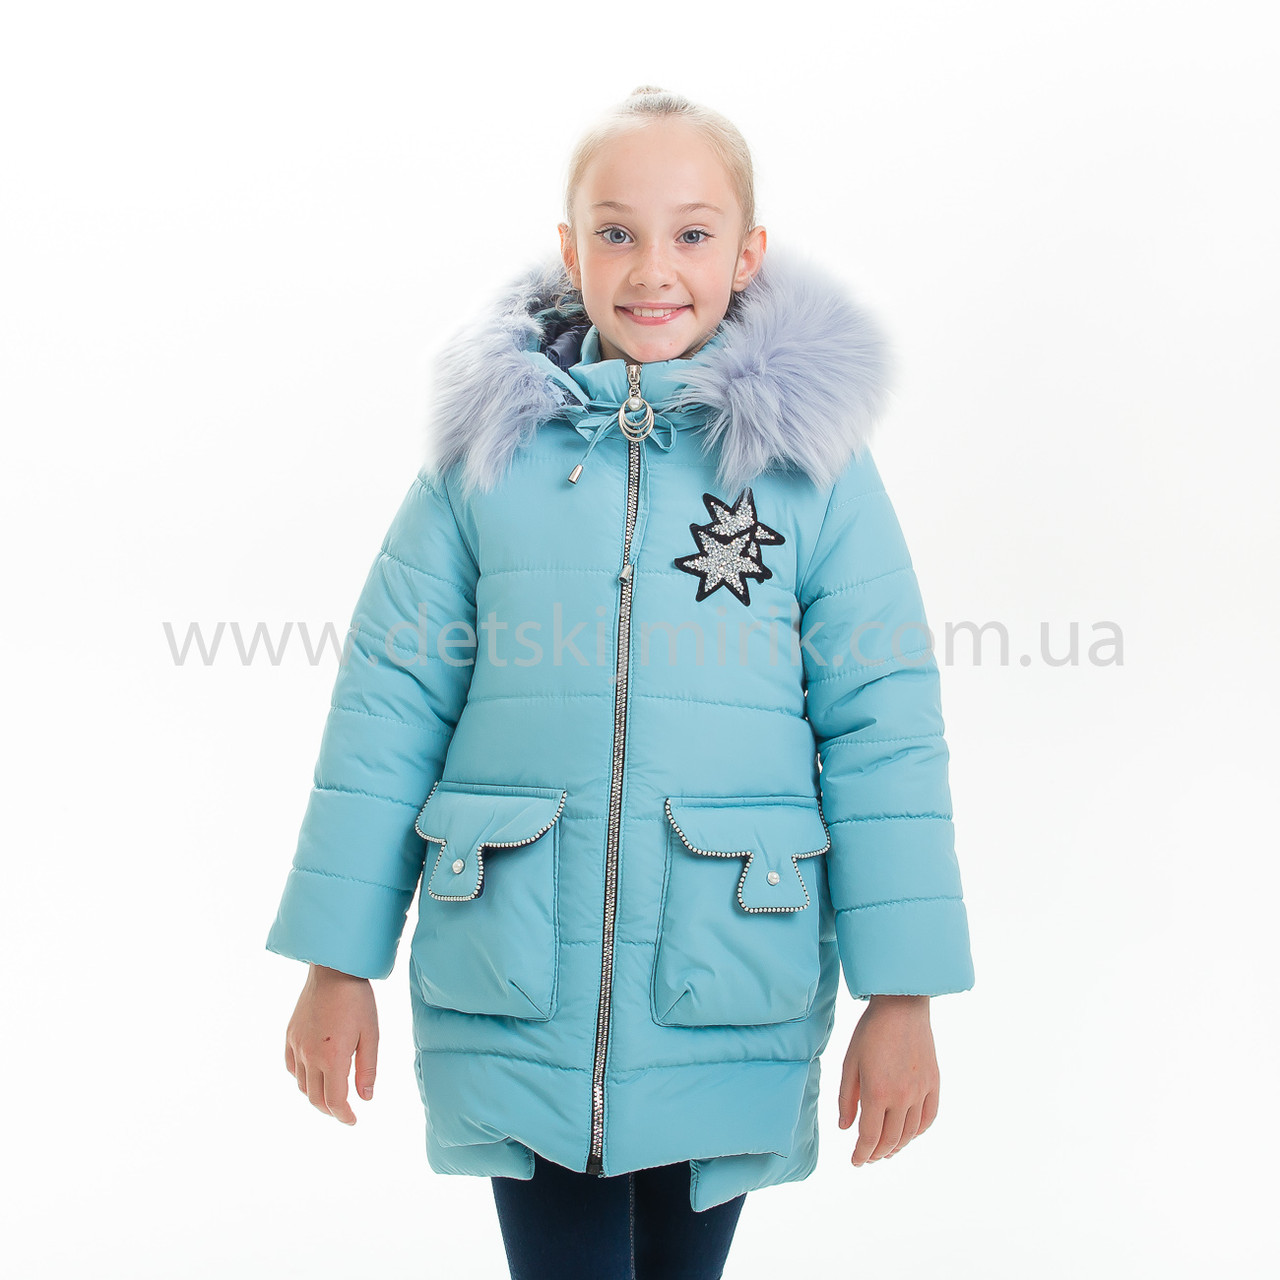 Зимова куртка для дівчинки "Яніна", Зима 2019 року